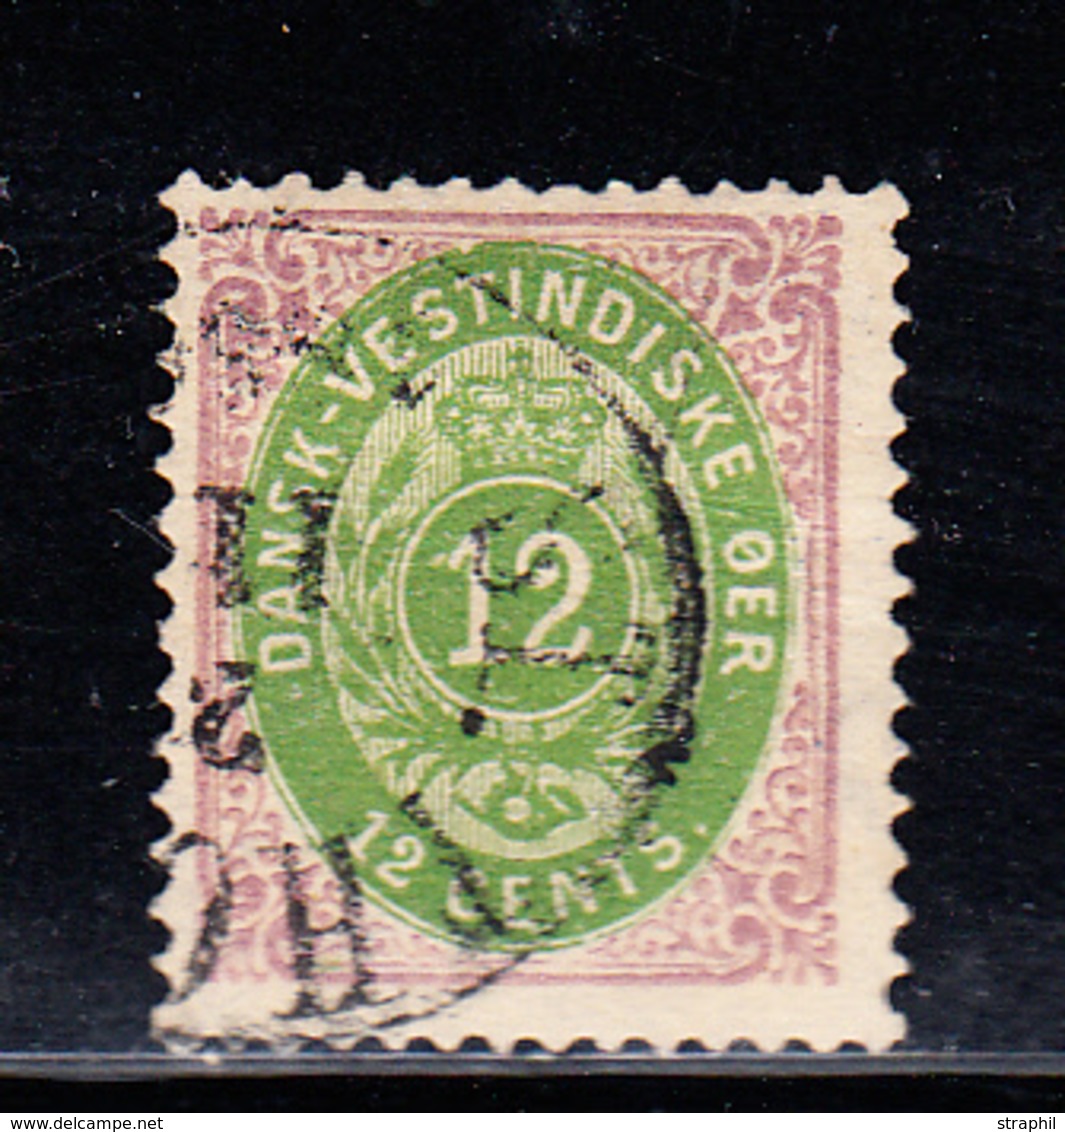 O N°11 - TB - Danemark (Antilles)